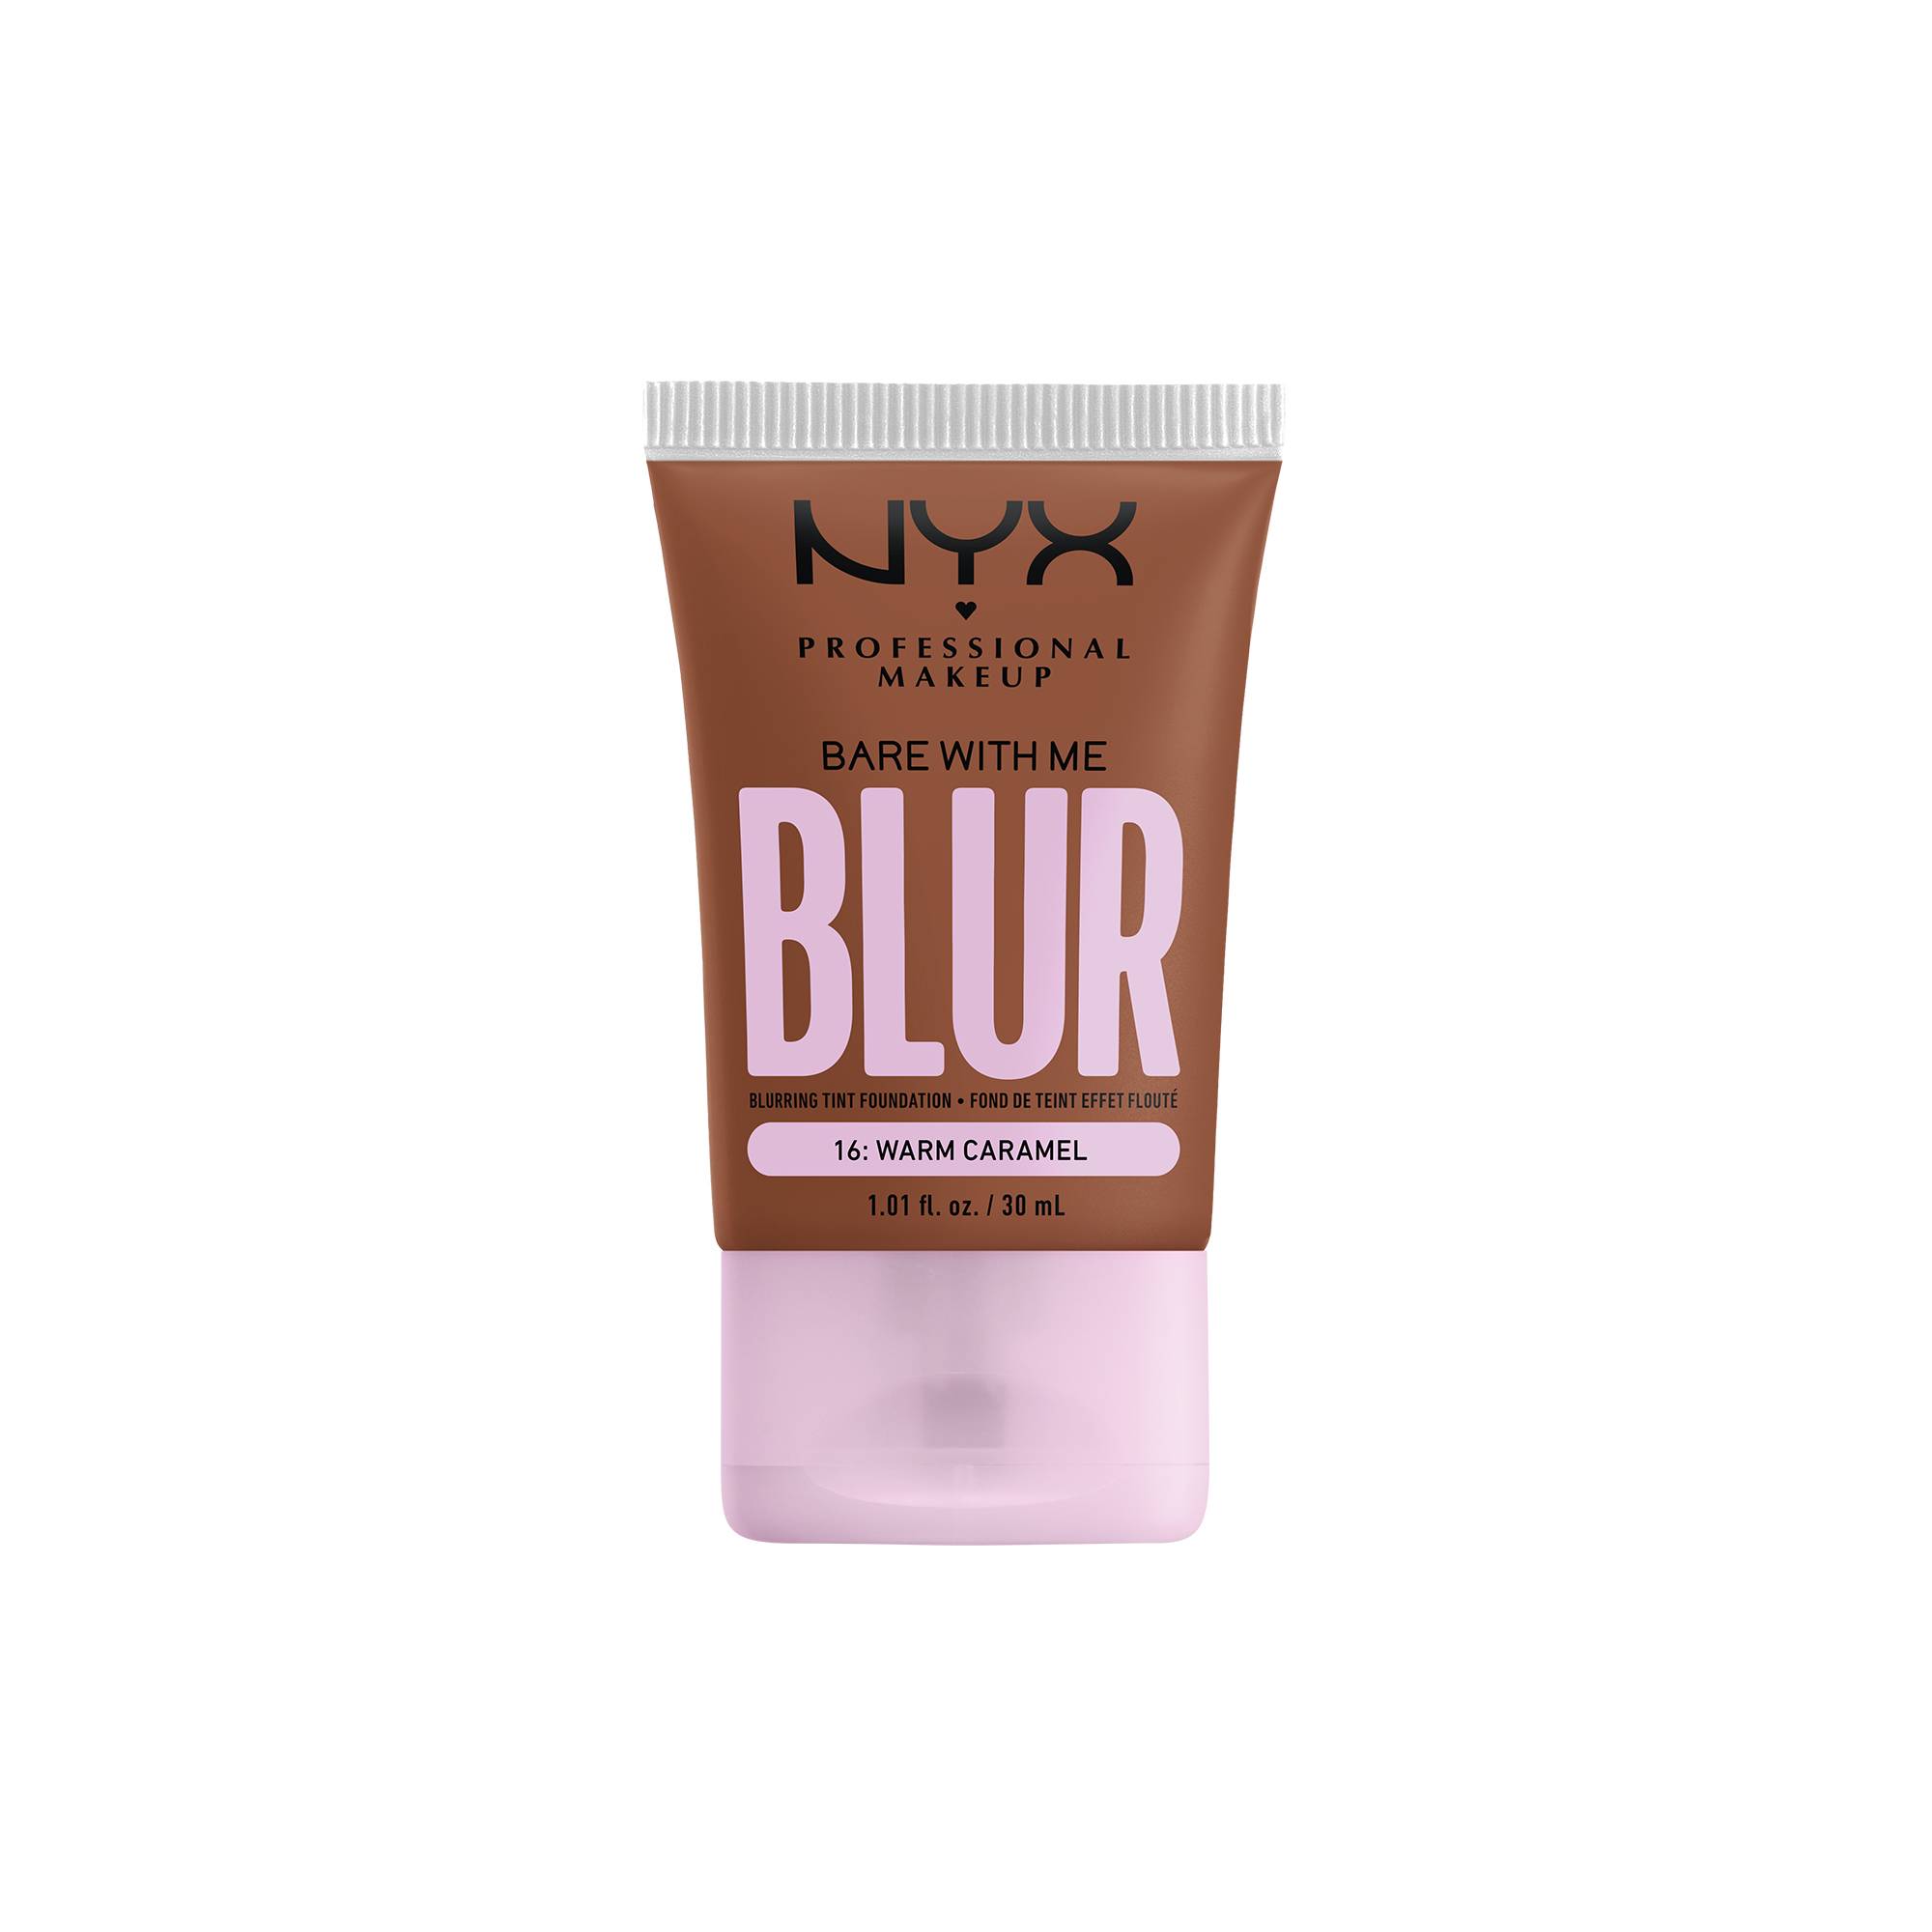 Fond de teint effet flouté Bare With Me Blur Warm Caramel de la marque NYX Professional Makeup - 1